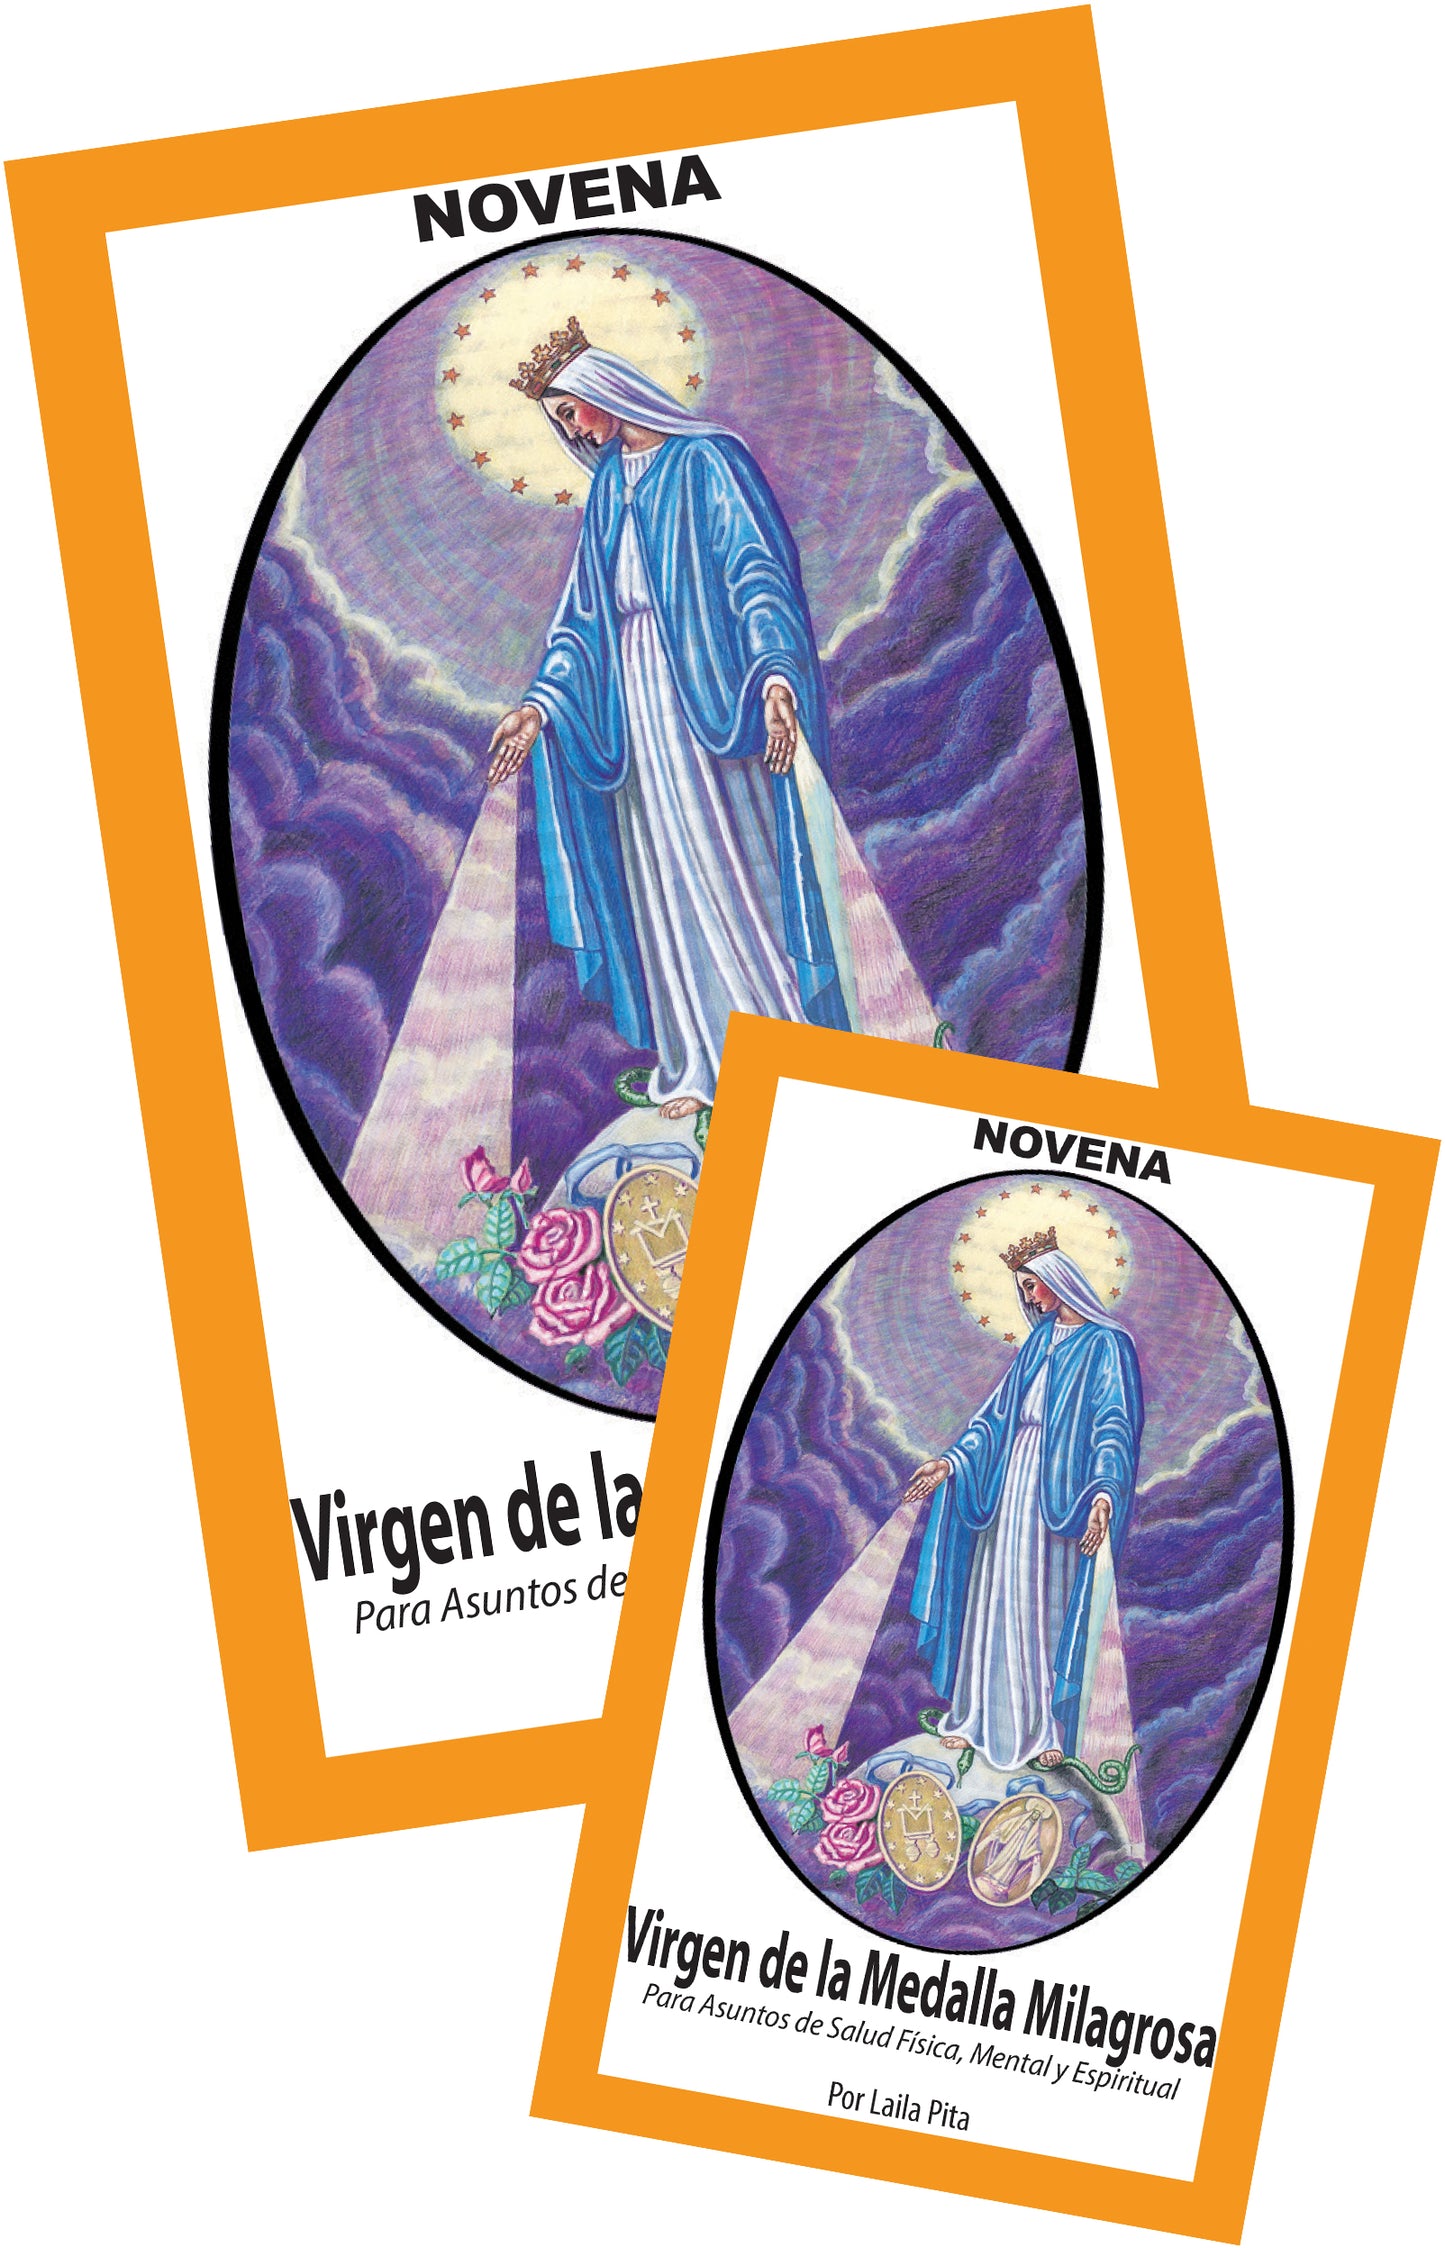 Novena De Virgen De La Medalla Milagrosa para Asuntos de Salud Física, Mental y Espiritual